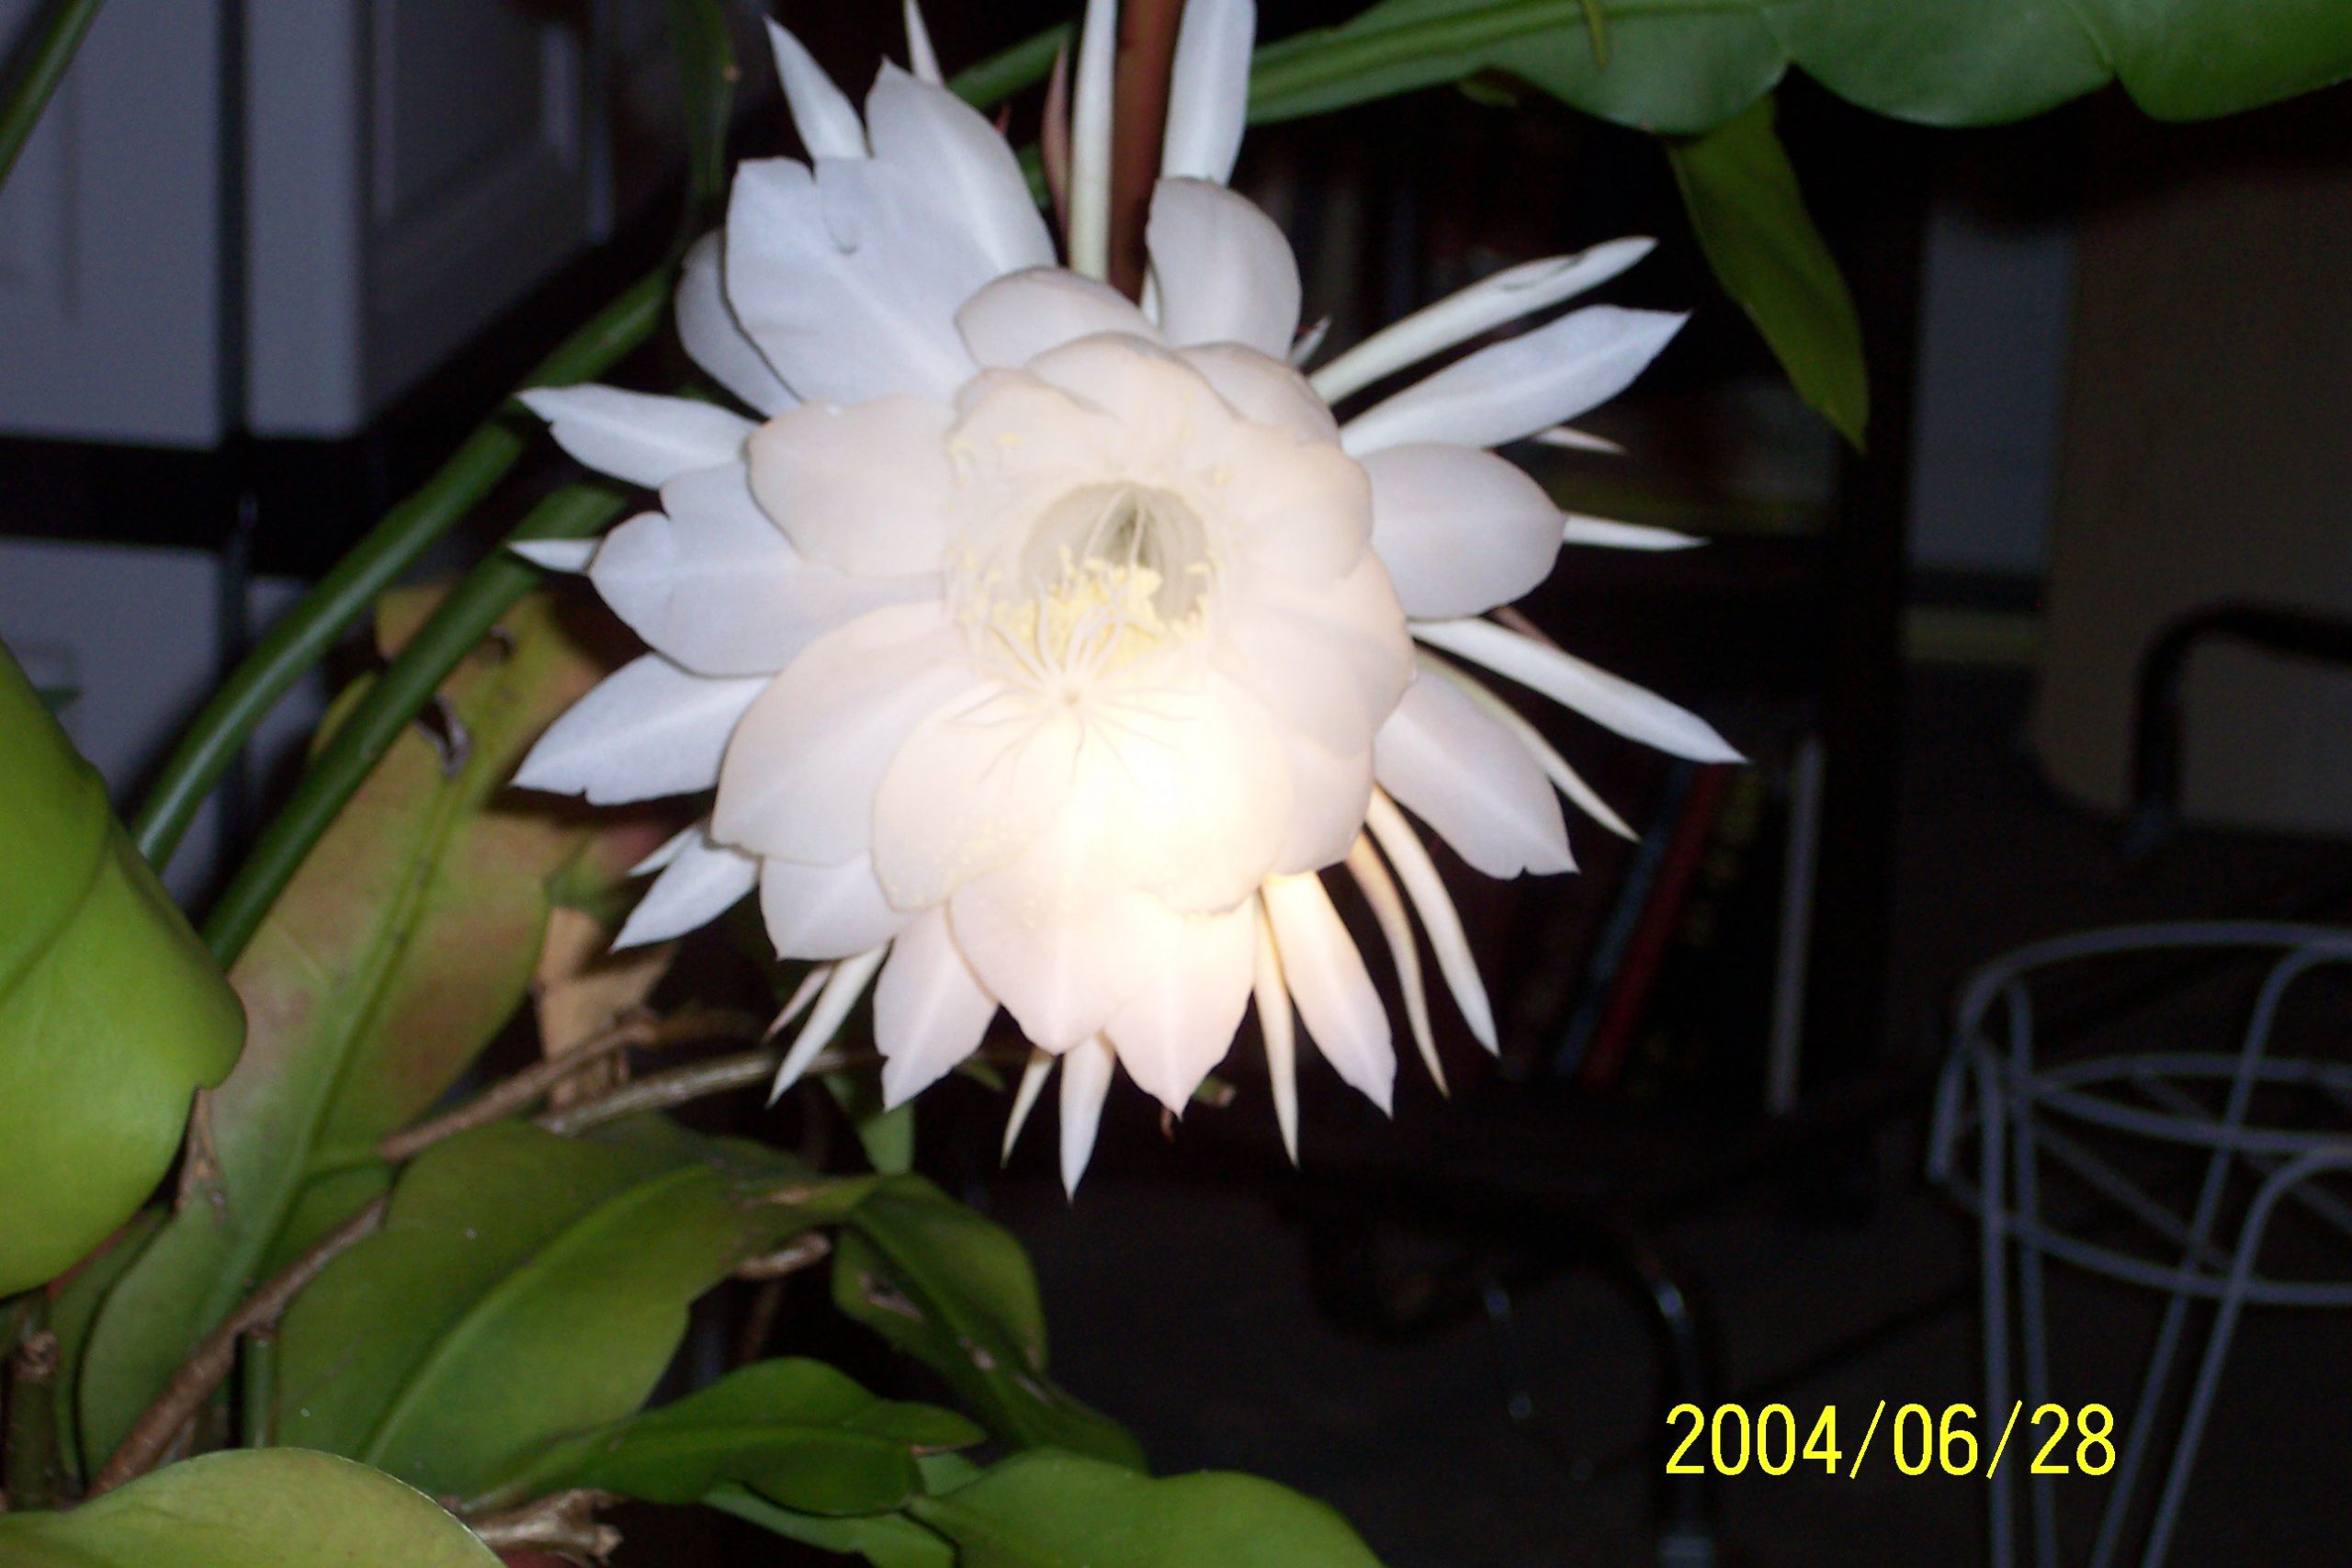 cereus flower 4